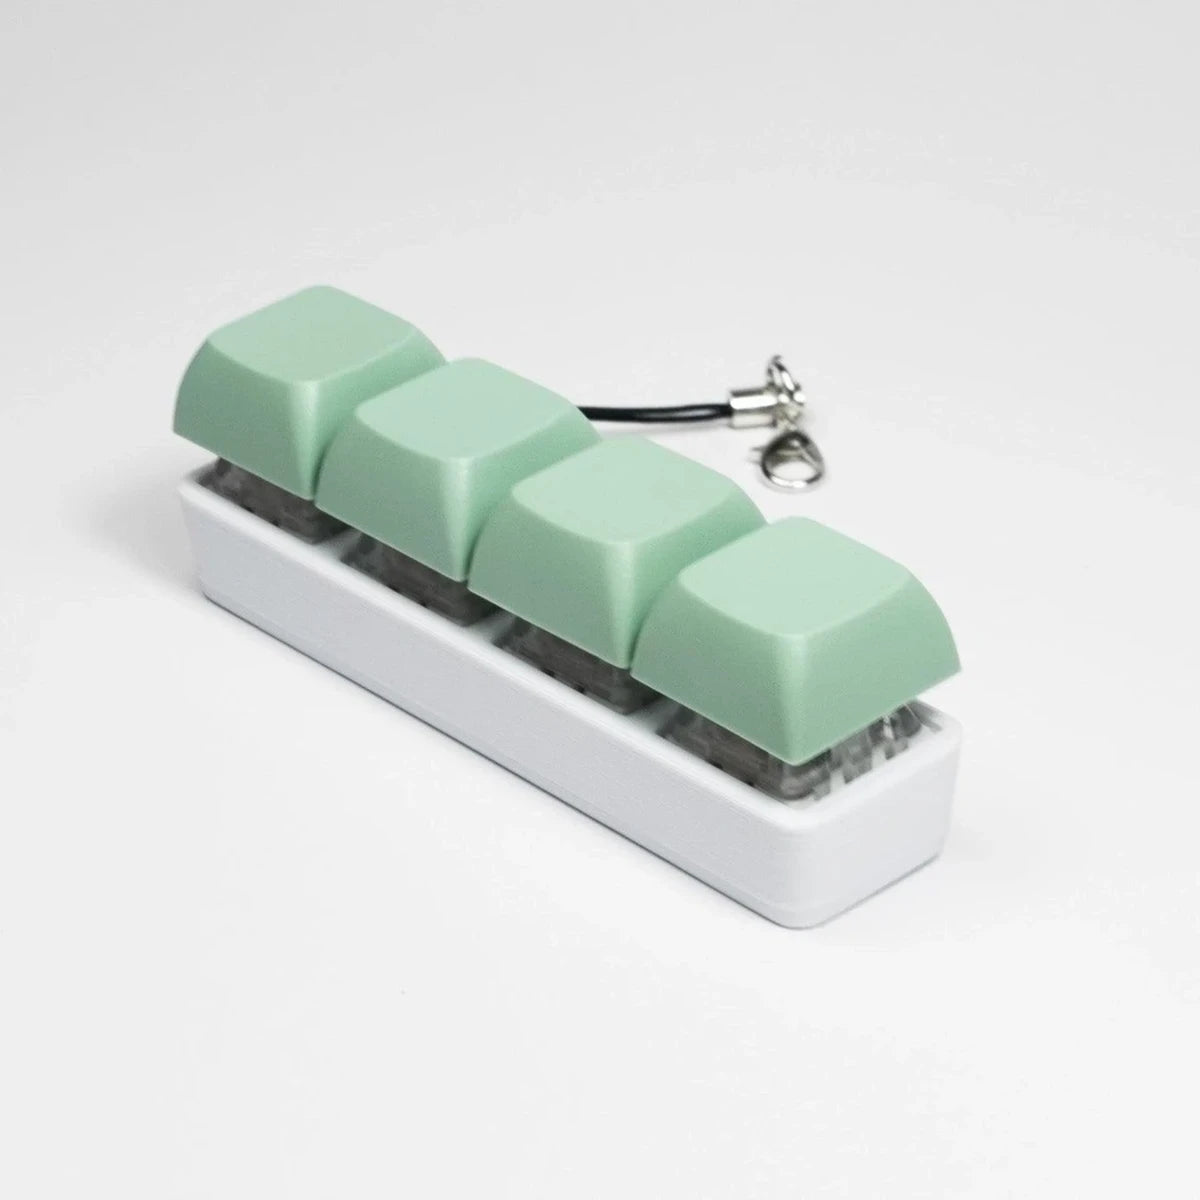 Strudel 3D 4 Key Fidget Stick - Mint Green